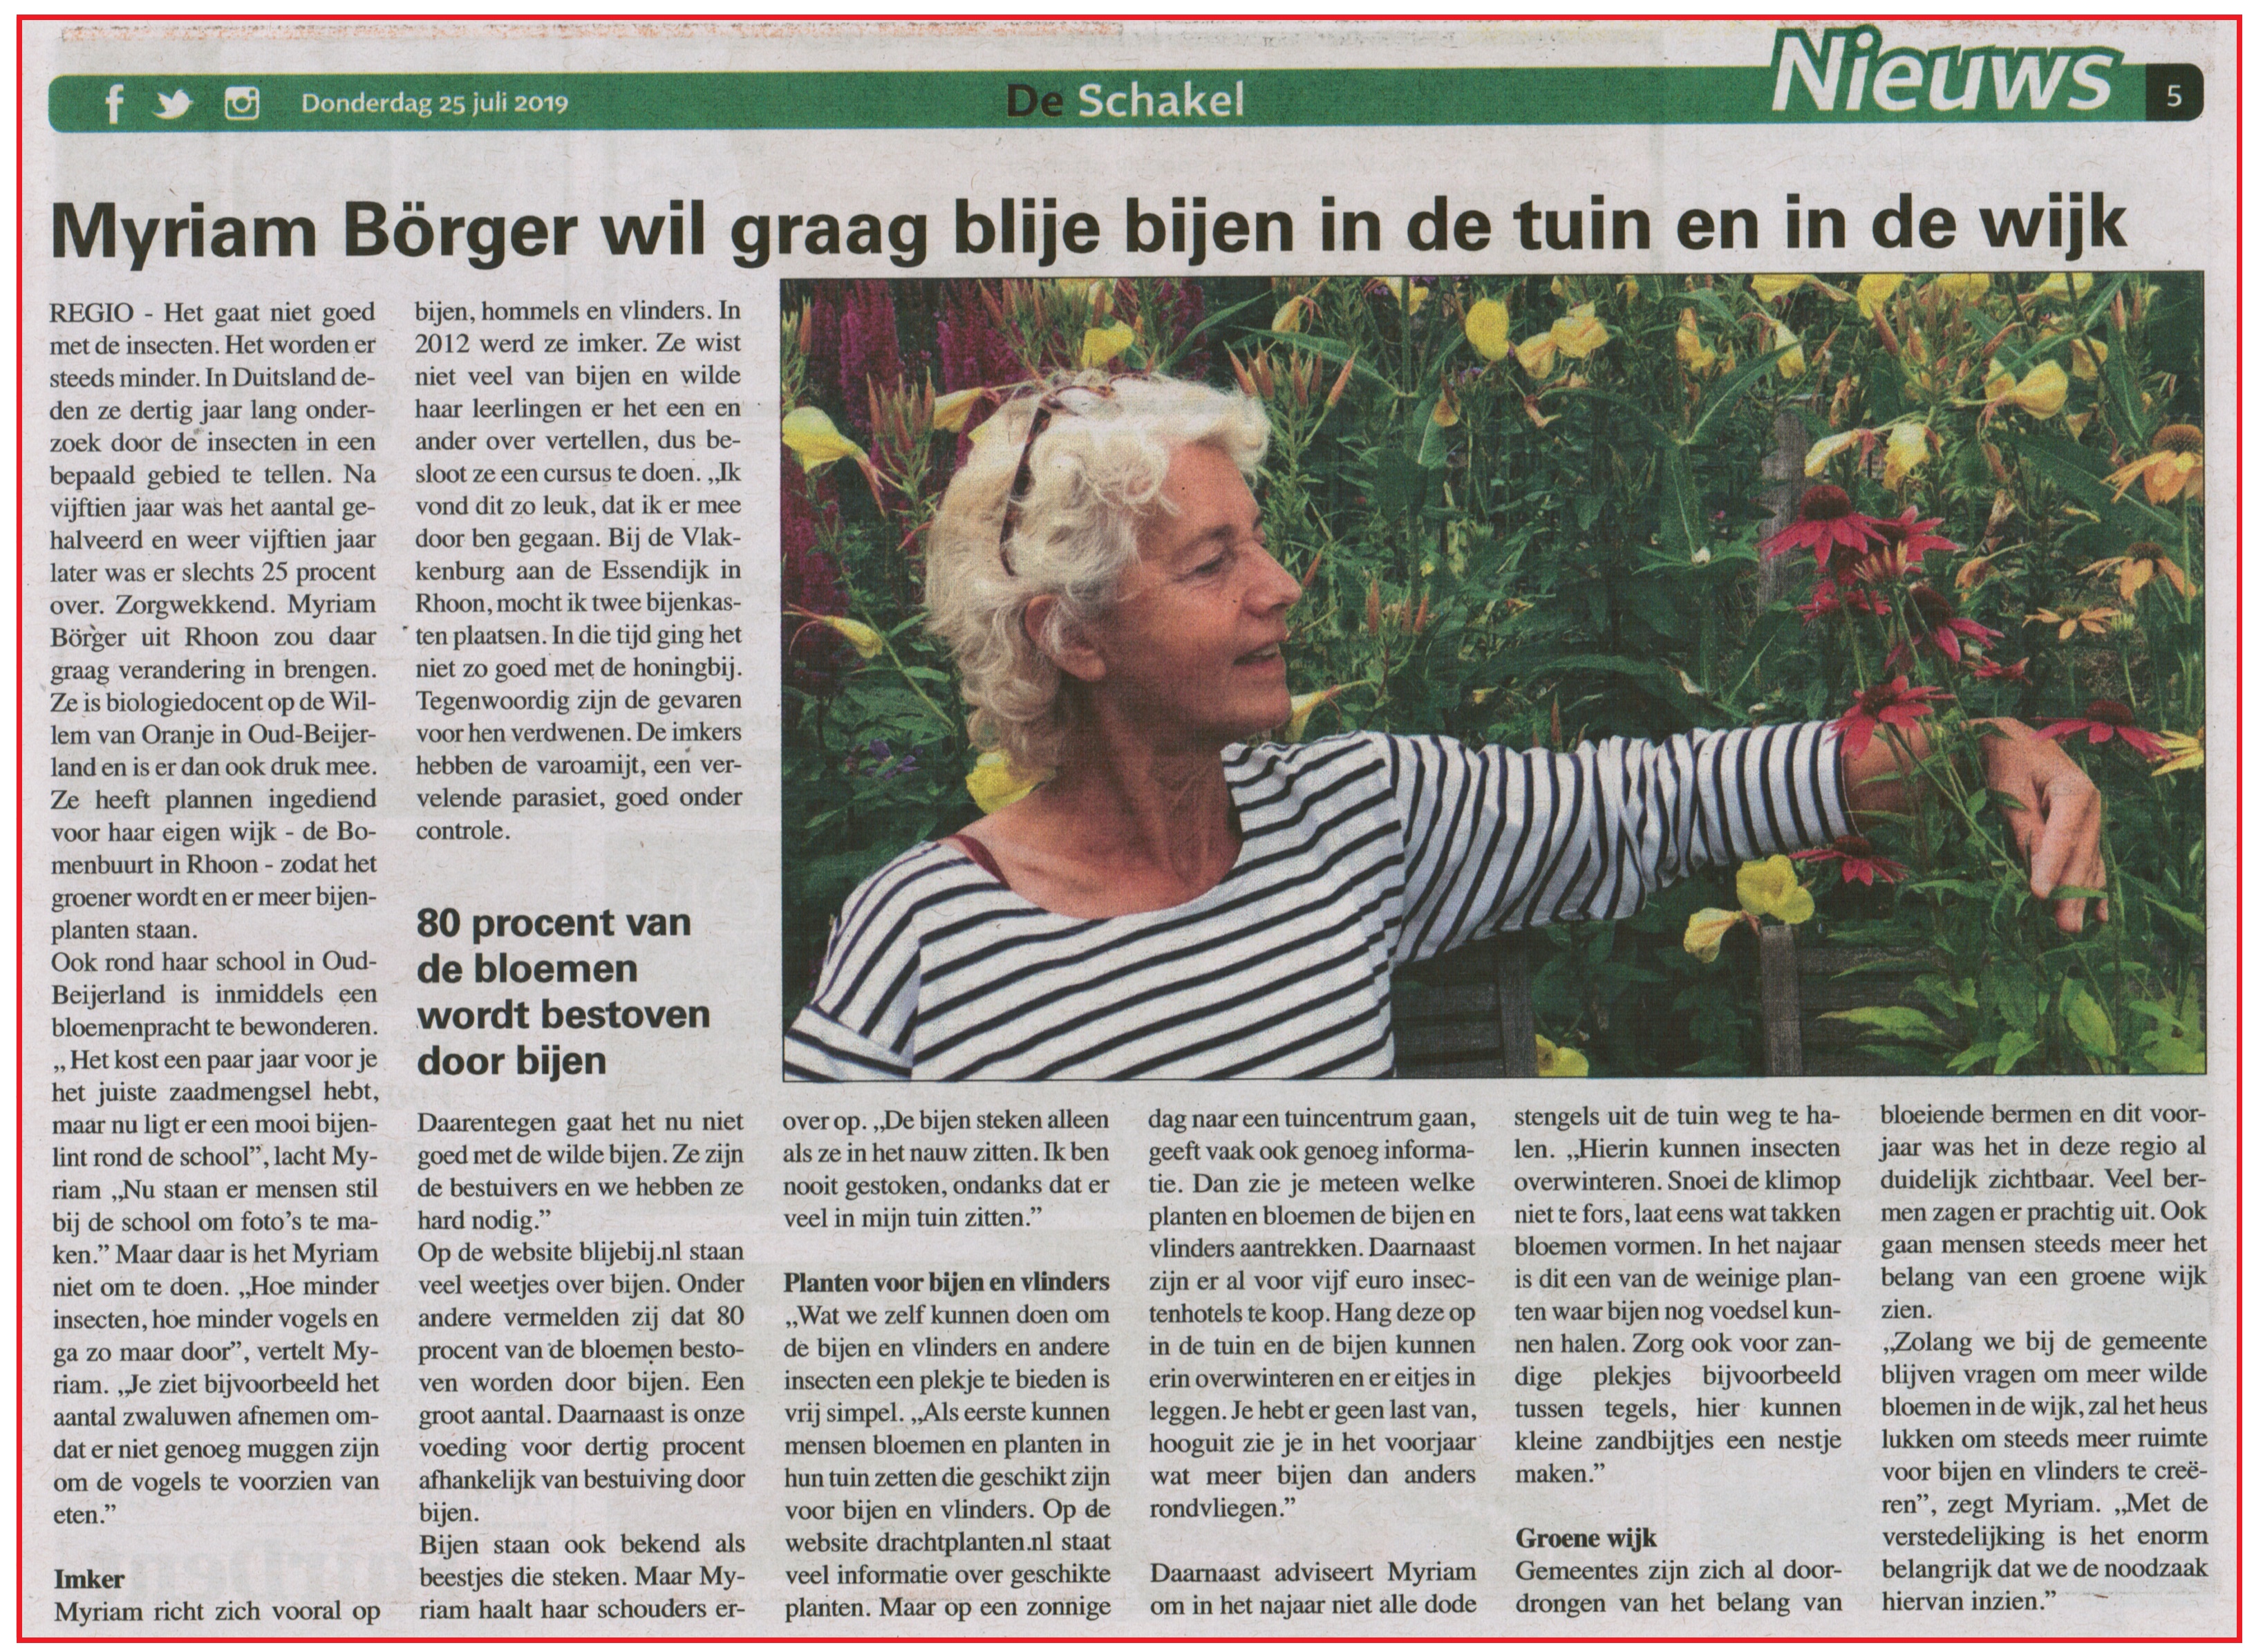 Myriam Borger wil graag blije bijen in de tuin en wijk